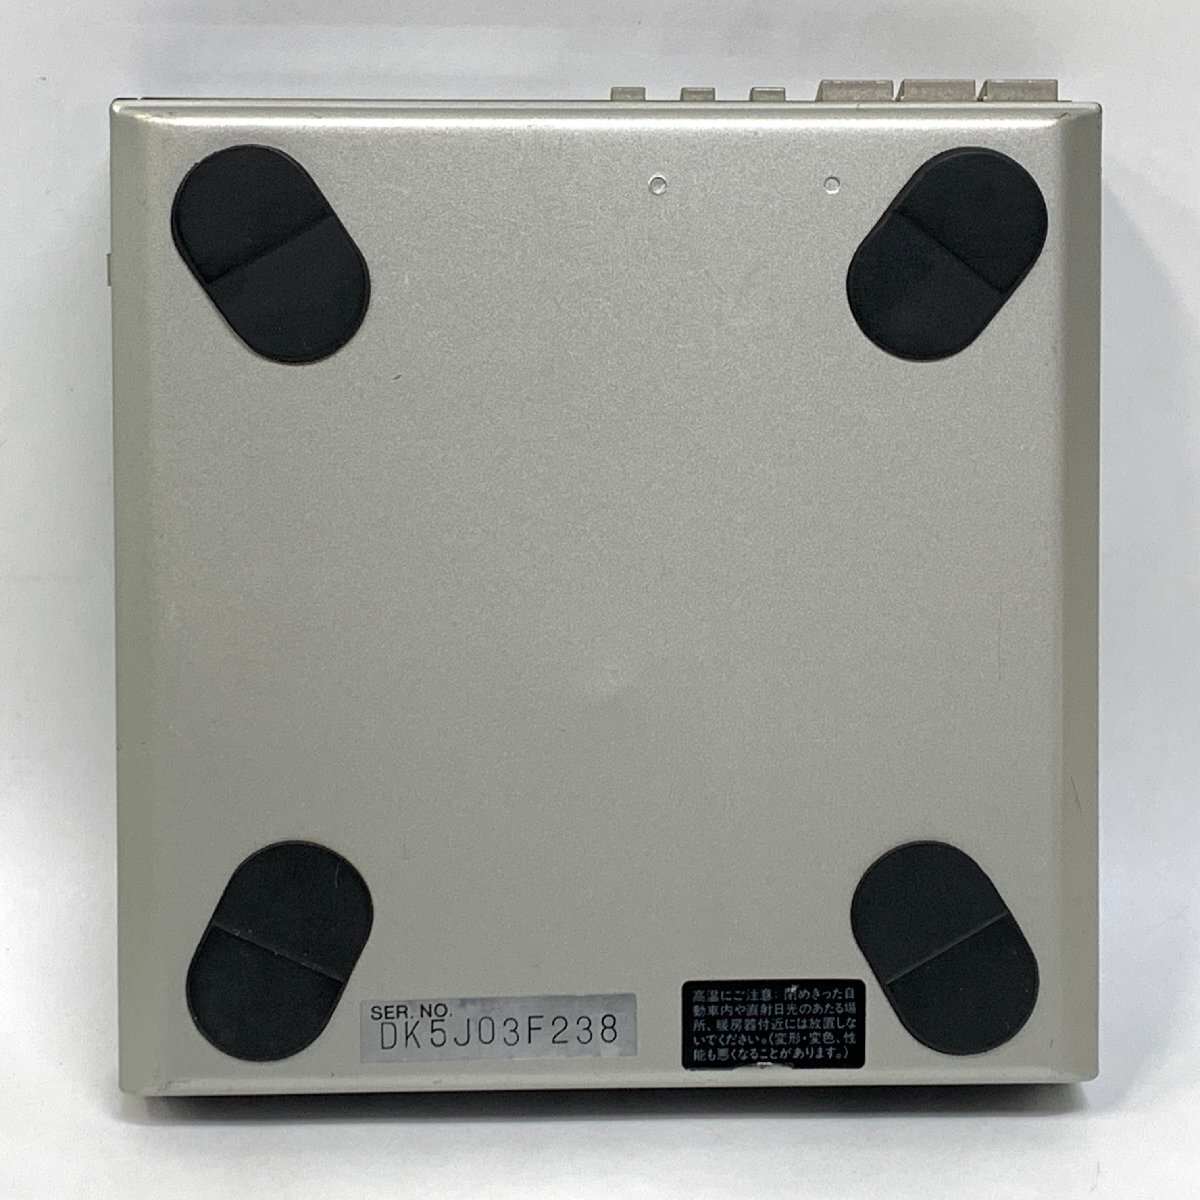 Technics SL-XP7< no check >*AC adaptor none Technics CDersi-da portable CD player silver MADE IN JAPAN *